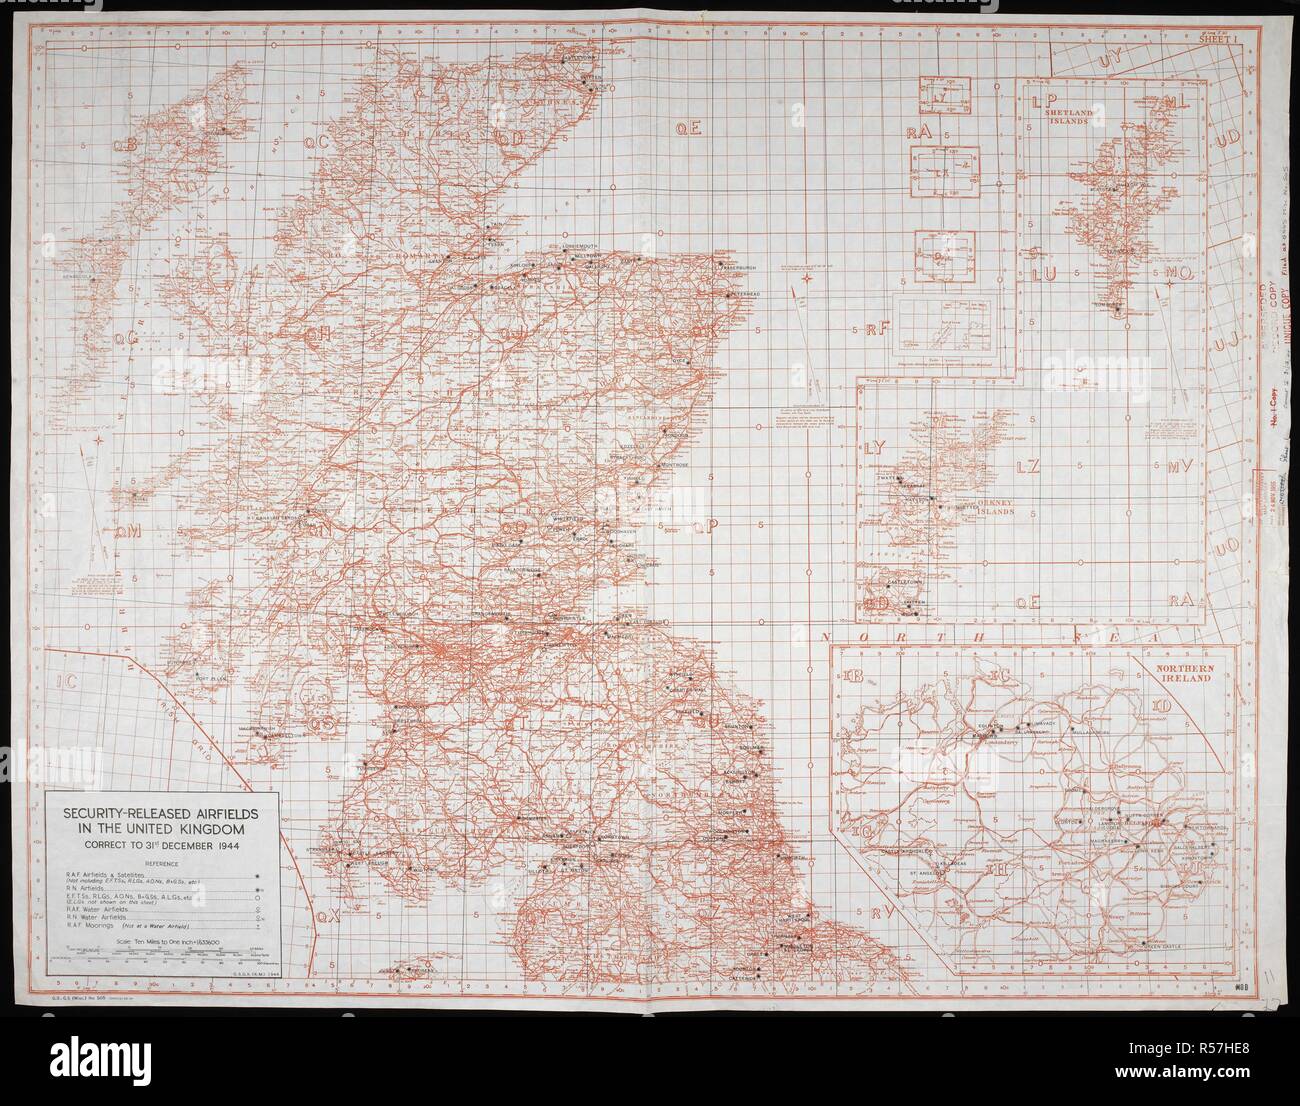 Mappa/grafico della sicurezza rilasciato gli aerodromi nel Regno Unito, al 31 dicembre 1944. Sicurezza rilasciato gli aerodromi nel Regno Unito, GSGS Misc 505. [S.l.] : [s.n.], 1944-1945. La Gran Bretagna. Ministero della Difesa. Sondaggio centro di produzione. col.; Scala 1:633 600. Fonte: Mappe MOD GSGS Misc 505. La metà superiore della mappa. Foto Stock